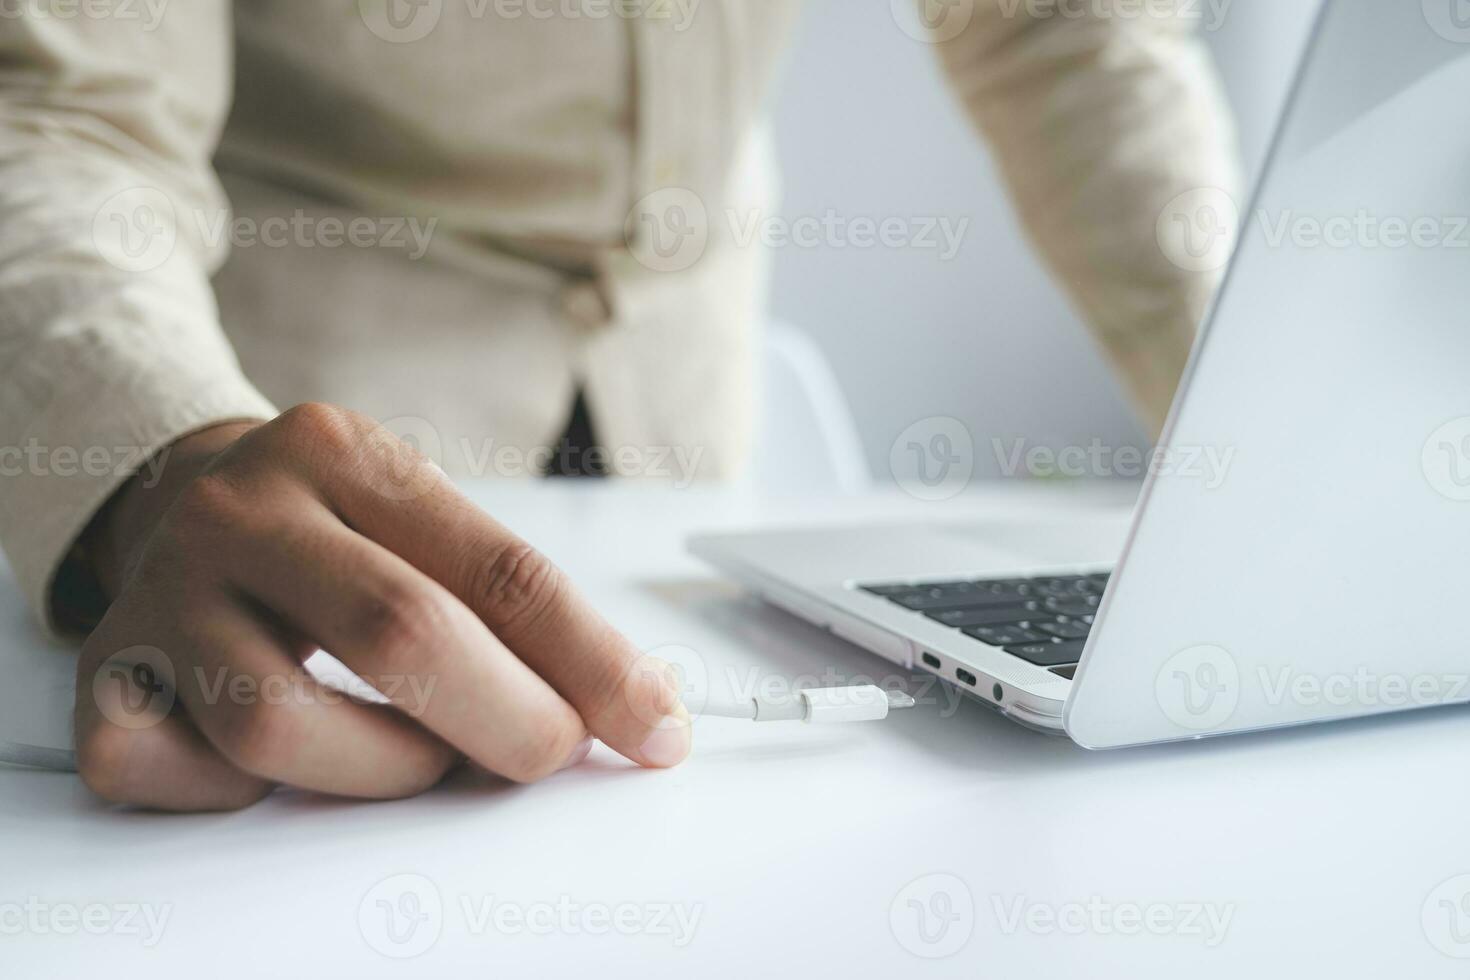 Personen Hand Einfügen ein USB Kabel Ladegerät in ein Computer. foto